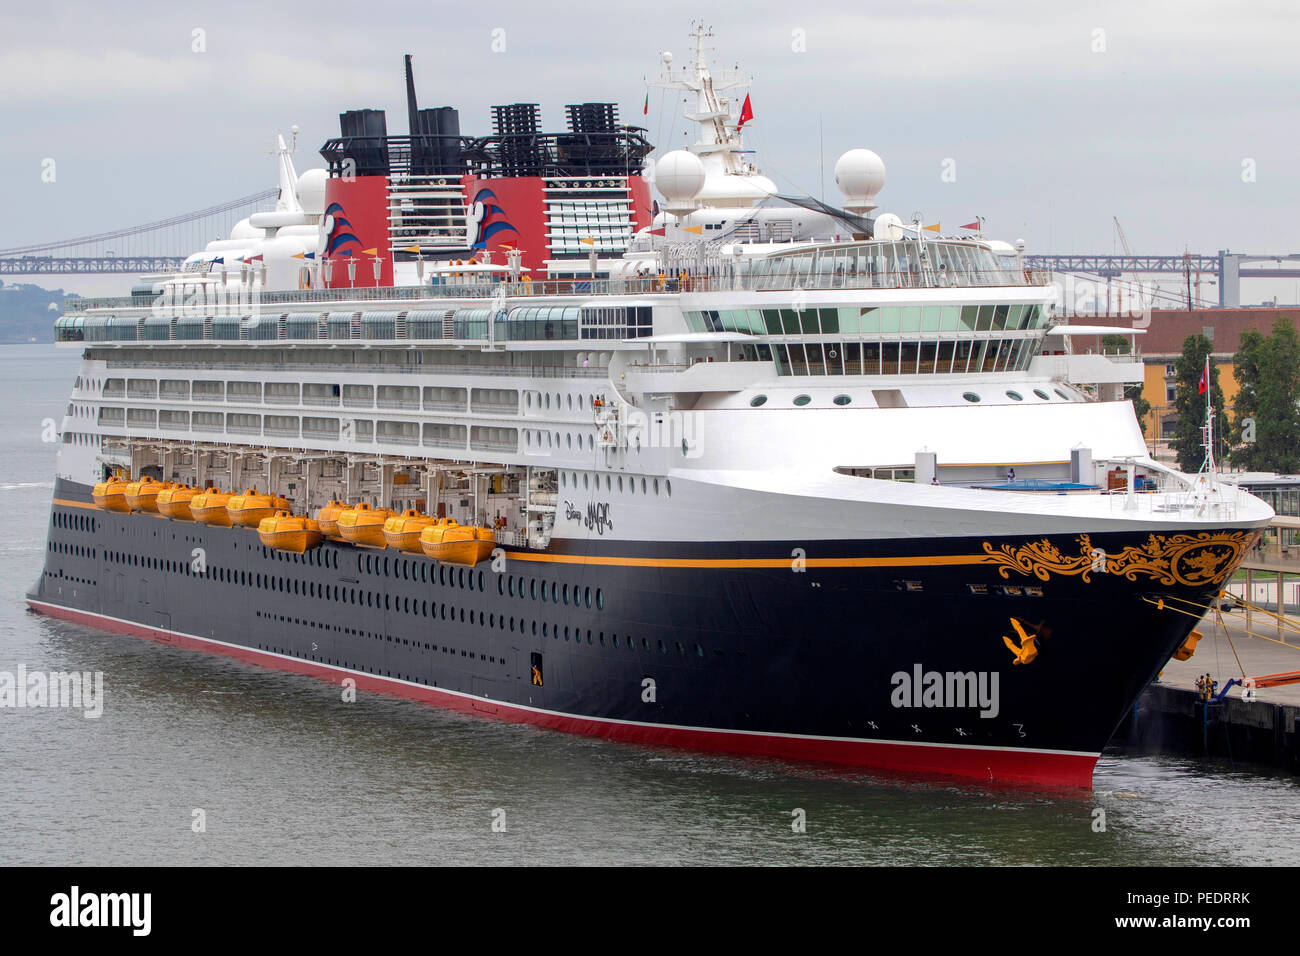 Disney Magic cruise ship besessen und durch die Disney Cruise Line betrieben angedockt in Lissabon Portugal Stockfoto